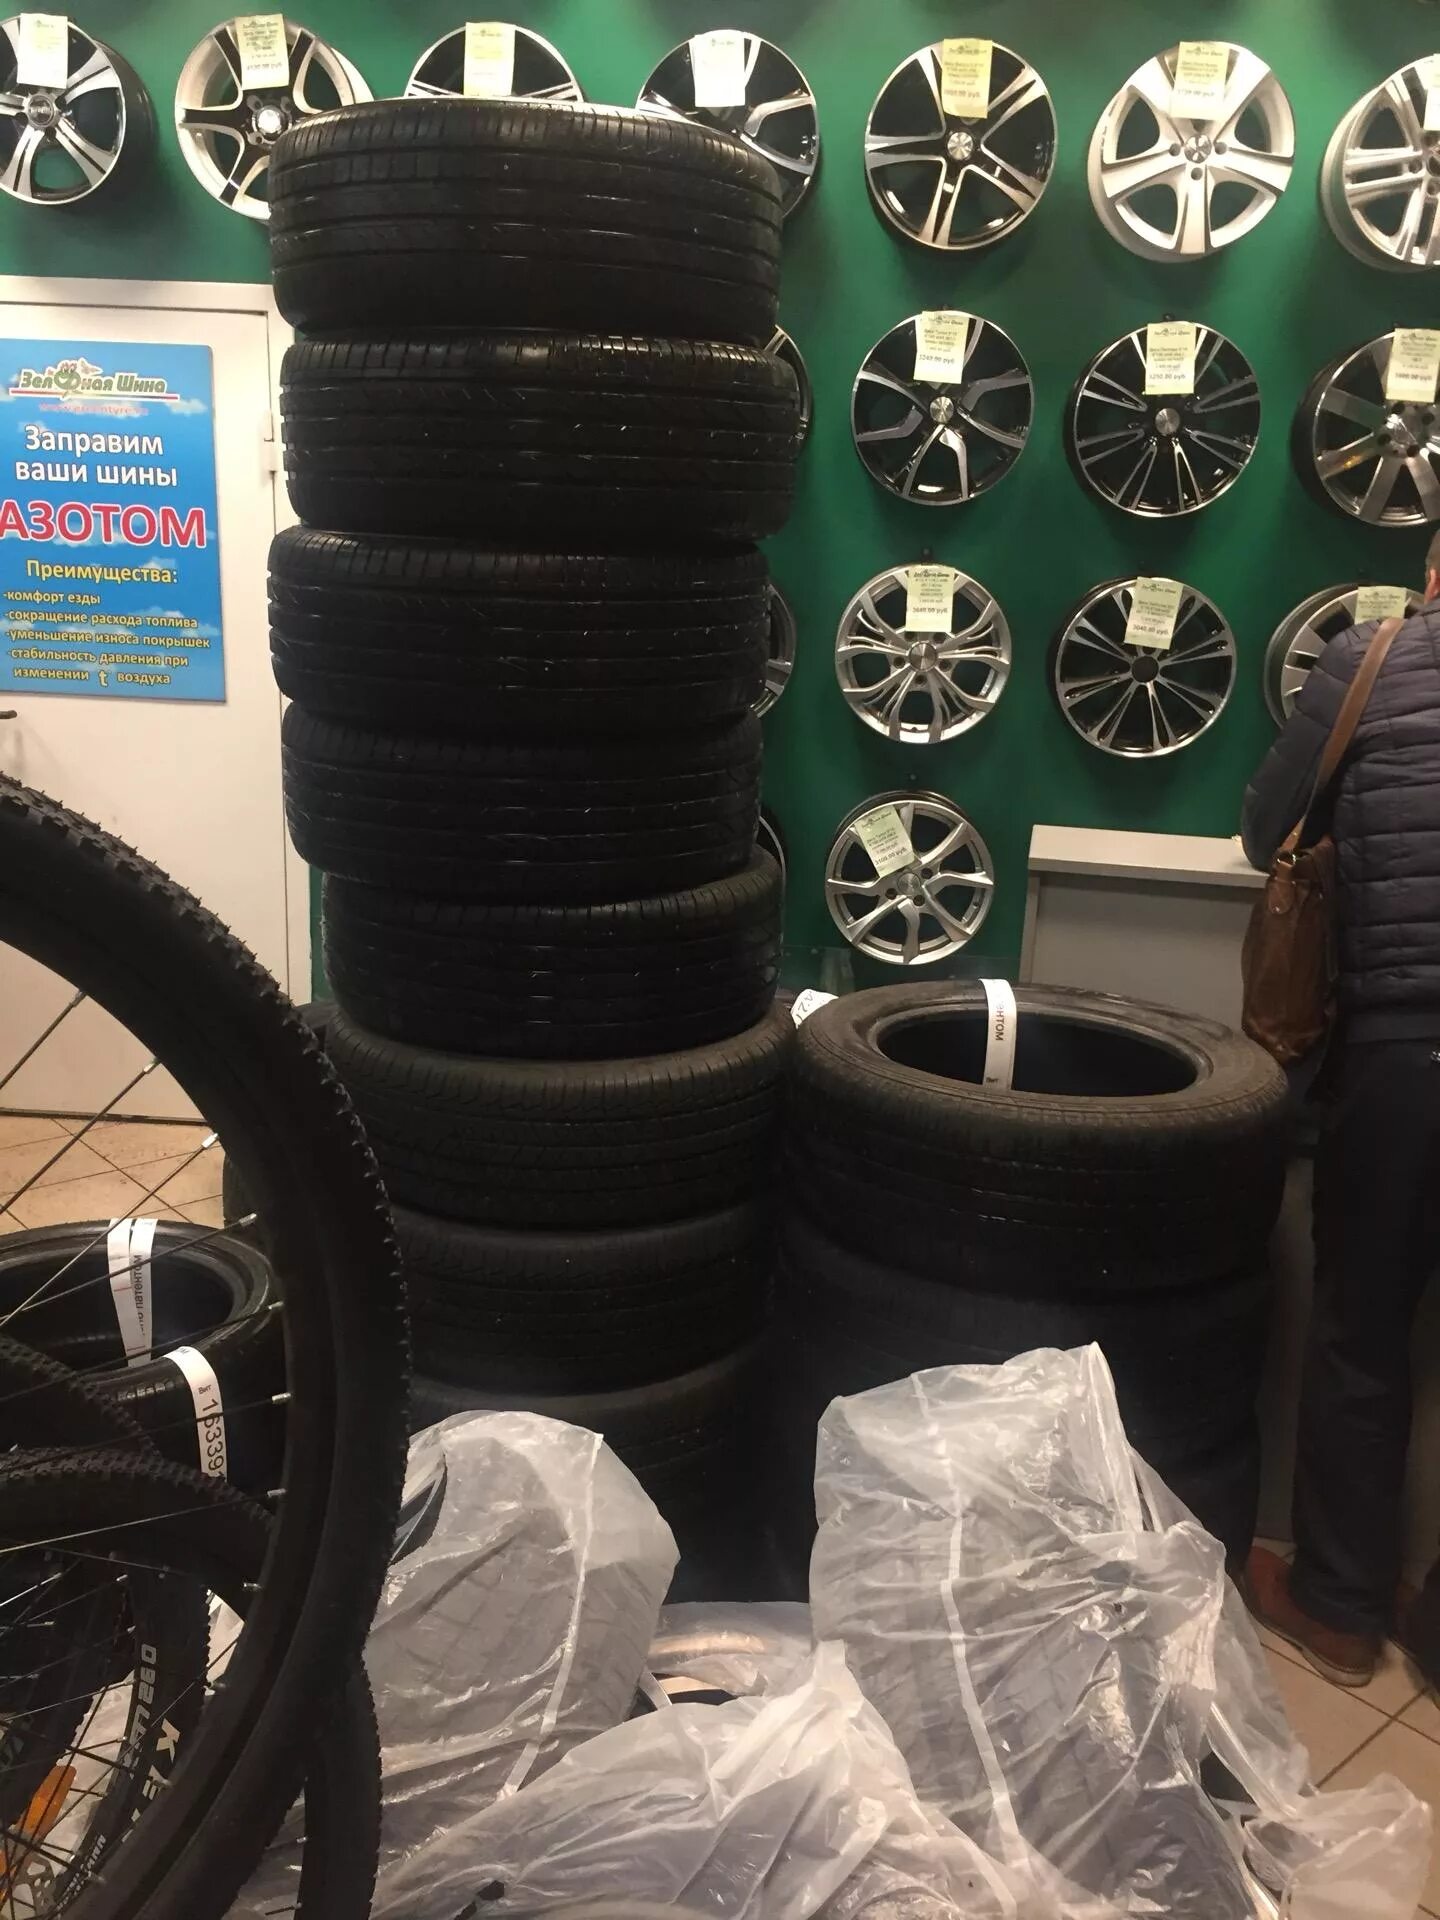 Зелёная шина на Софийской 108. Зеленая шина шины. Колесо магазин шин в СПБ. Зелёное колесо магазин шин в СПБ. Зеленые шины купить